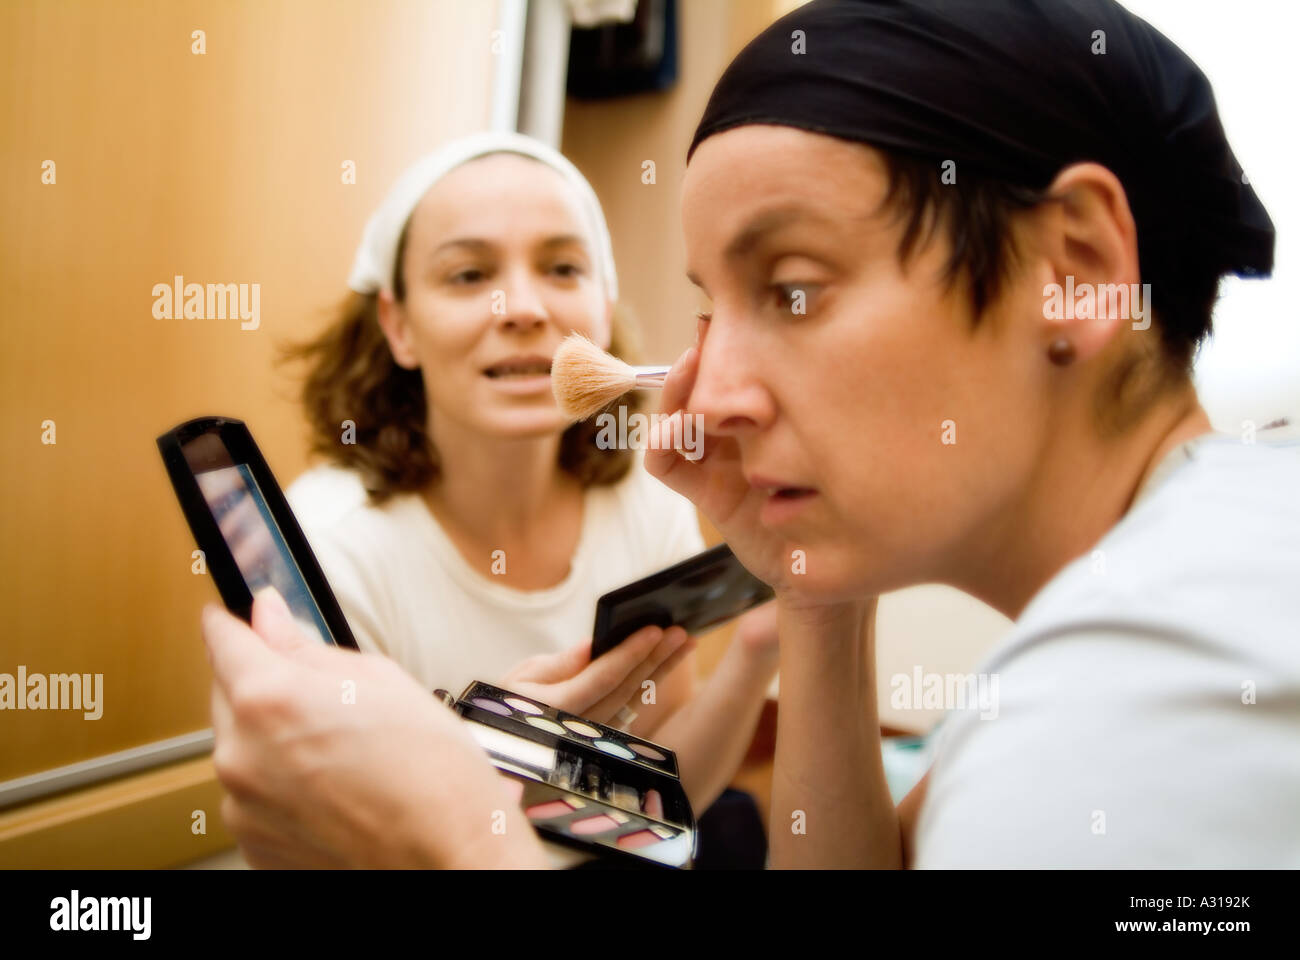 women and makeup Stock Photo